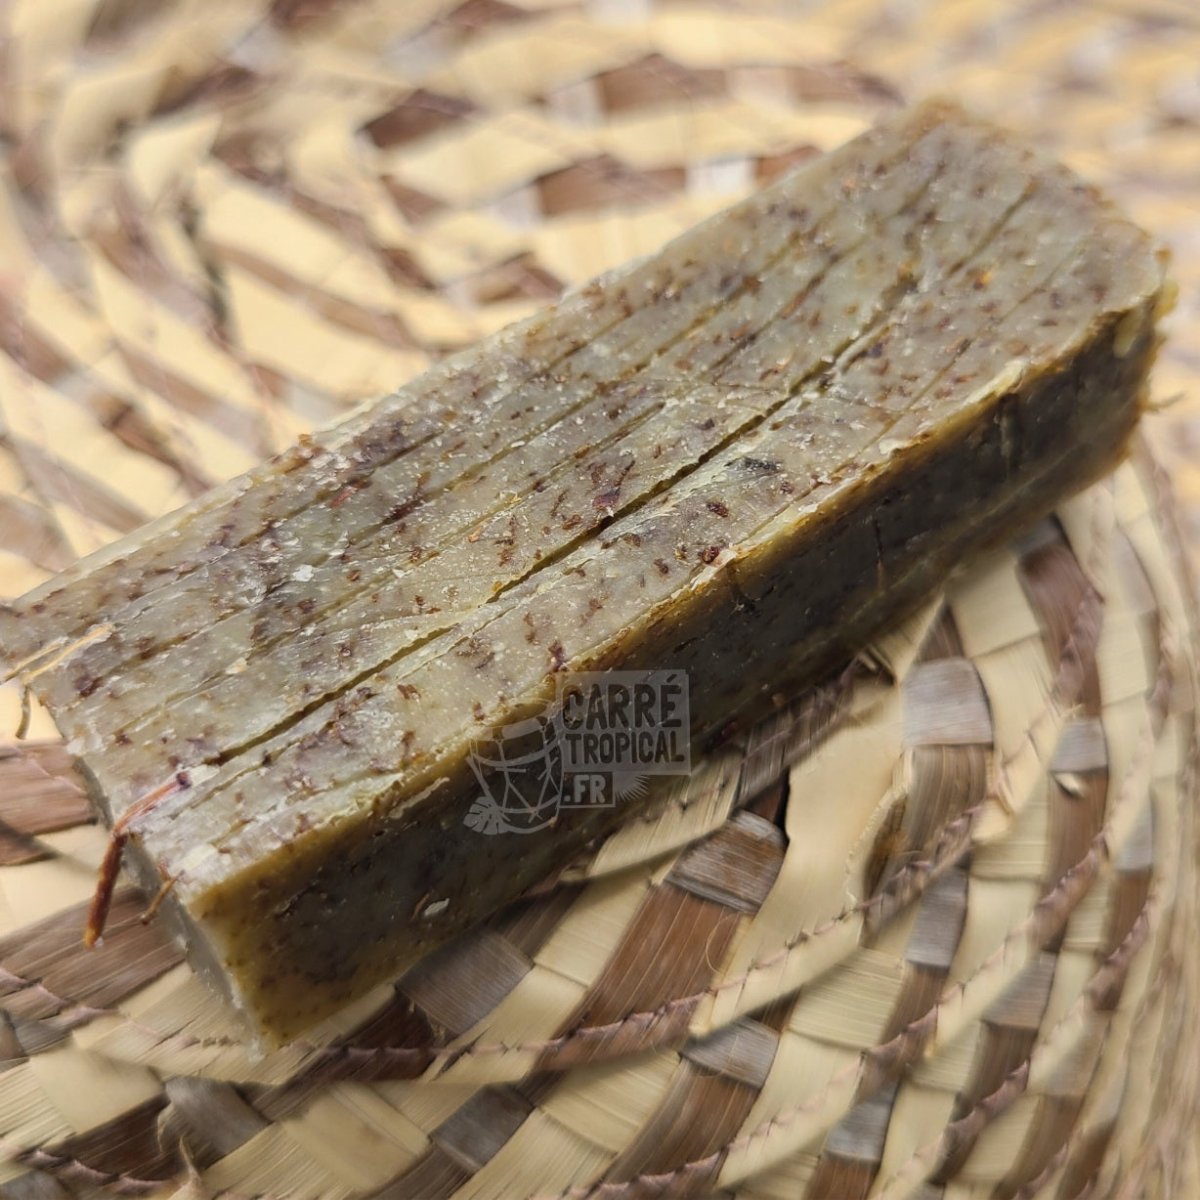 SAVON AVOCAT-MORINGA 🥑 surgras naturel artisanal solide | Par Stéphanie Ronce - Carré TropicalBatônnet (40g)savon